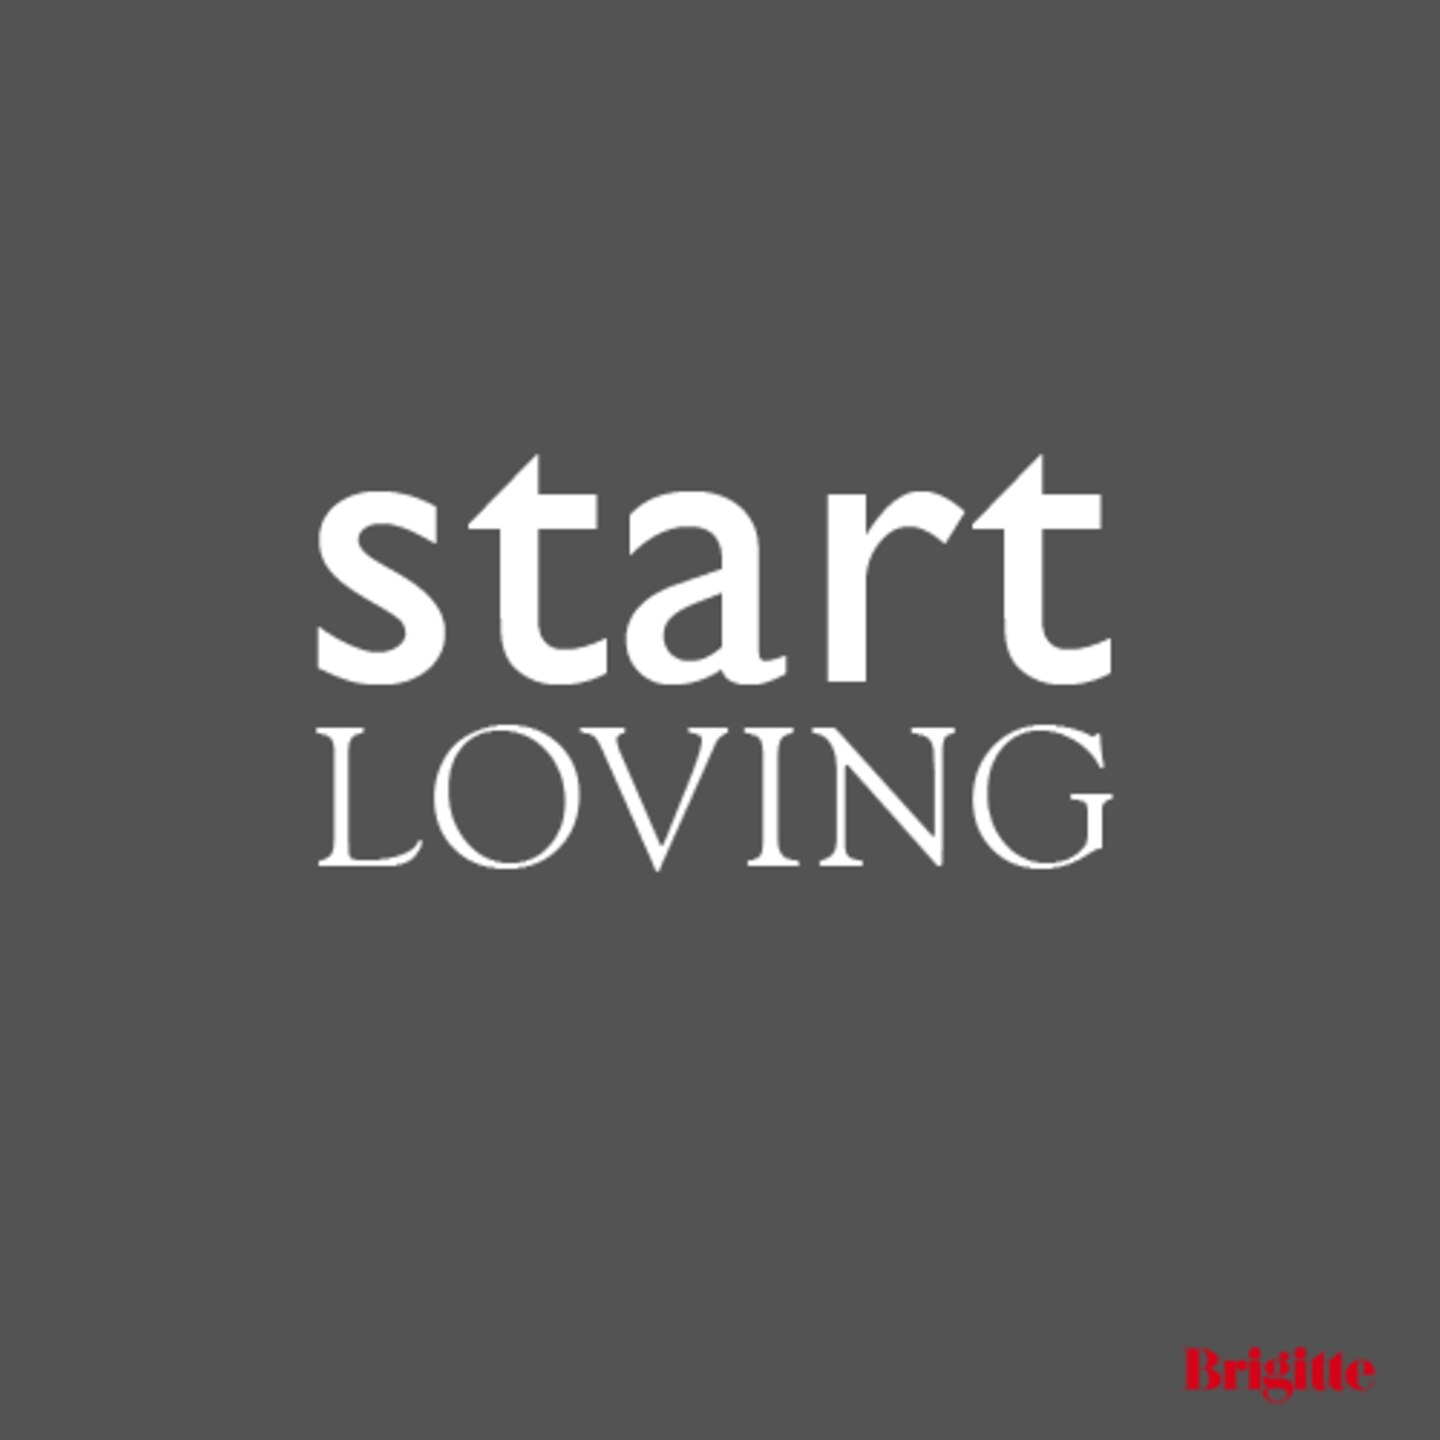 Start loving!